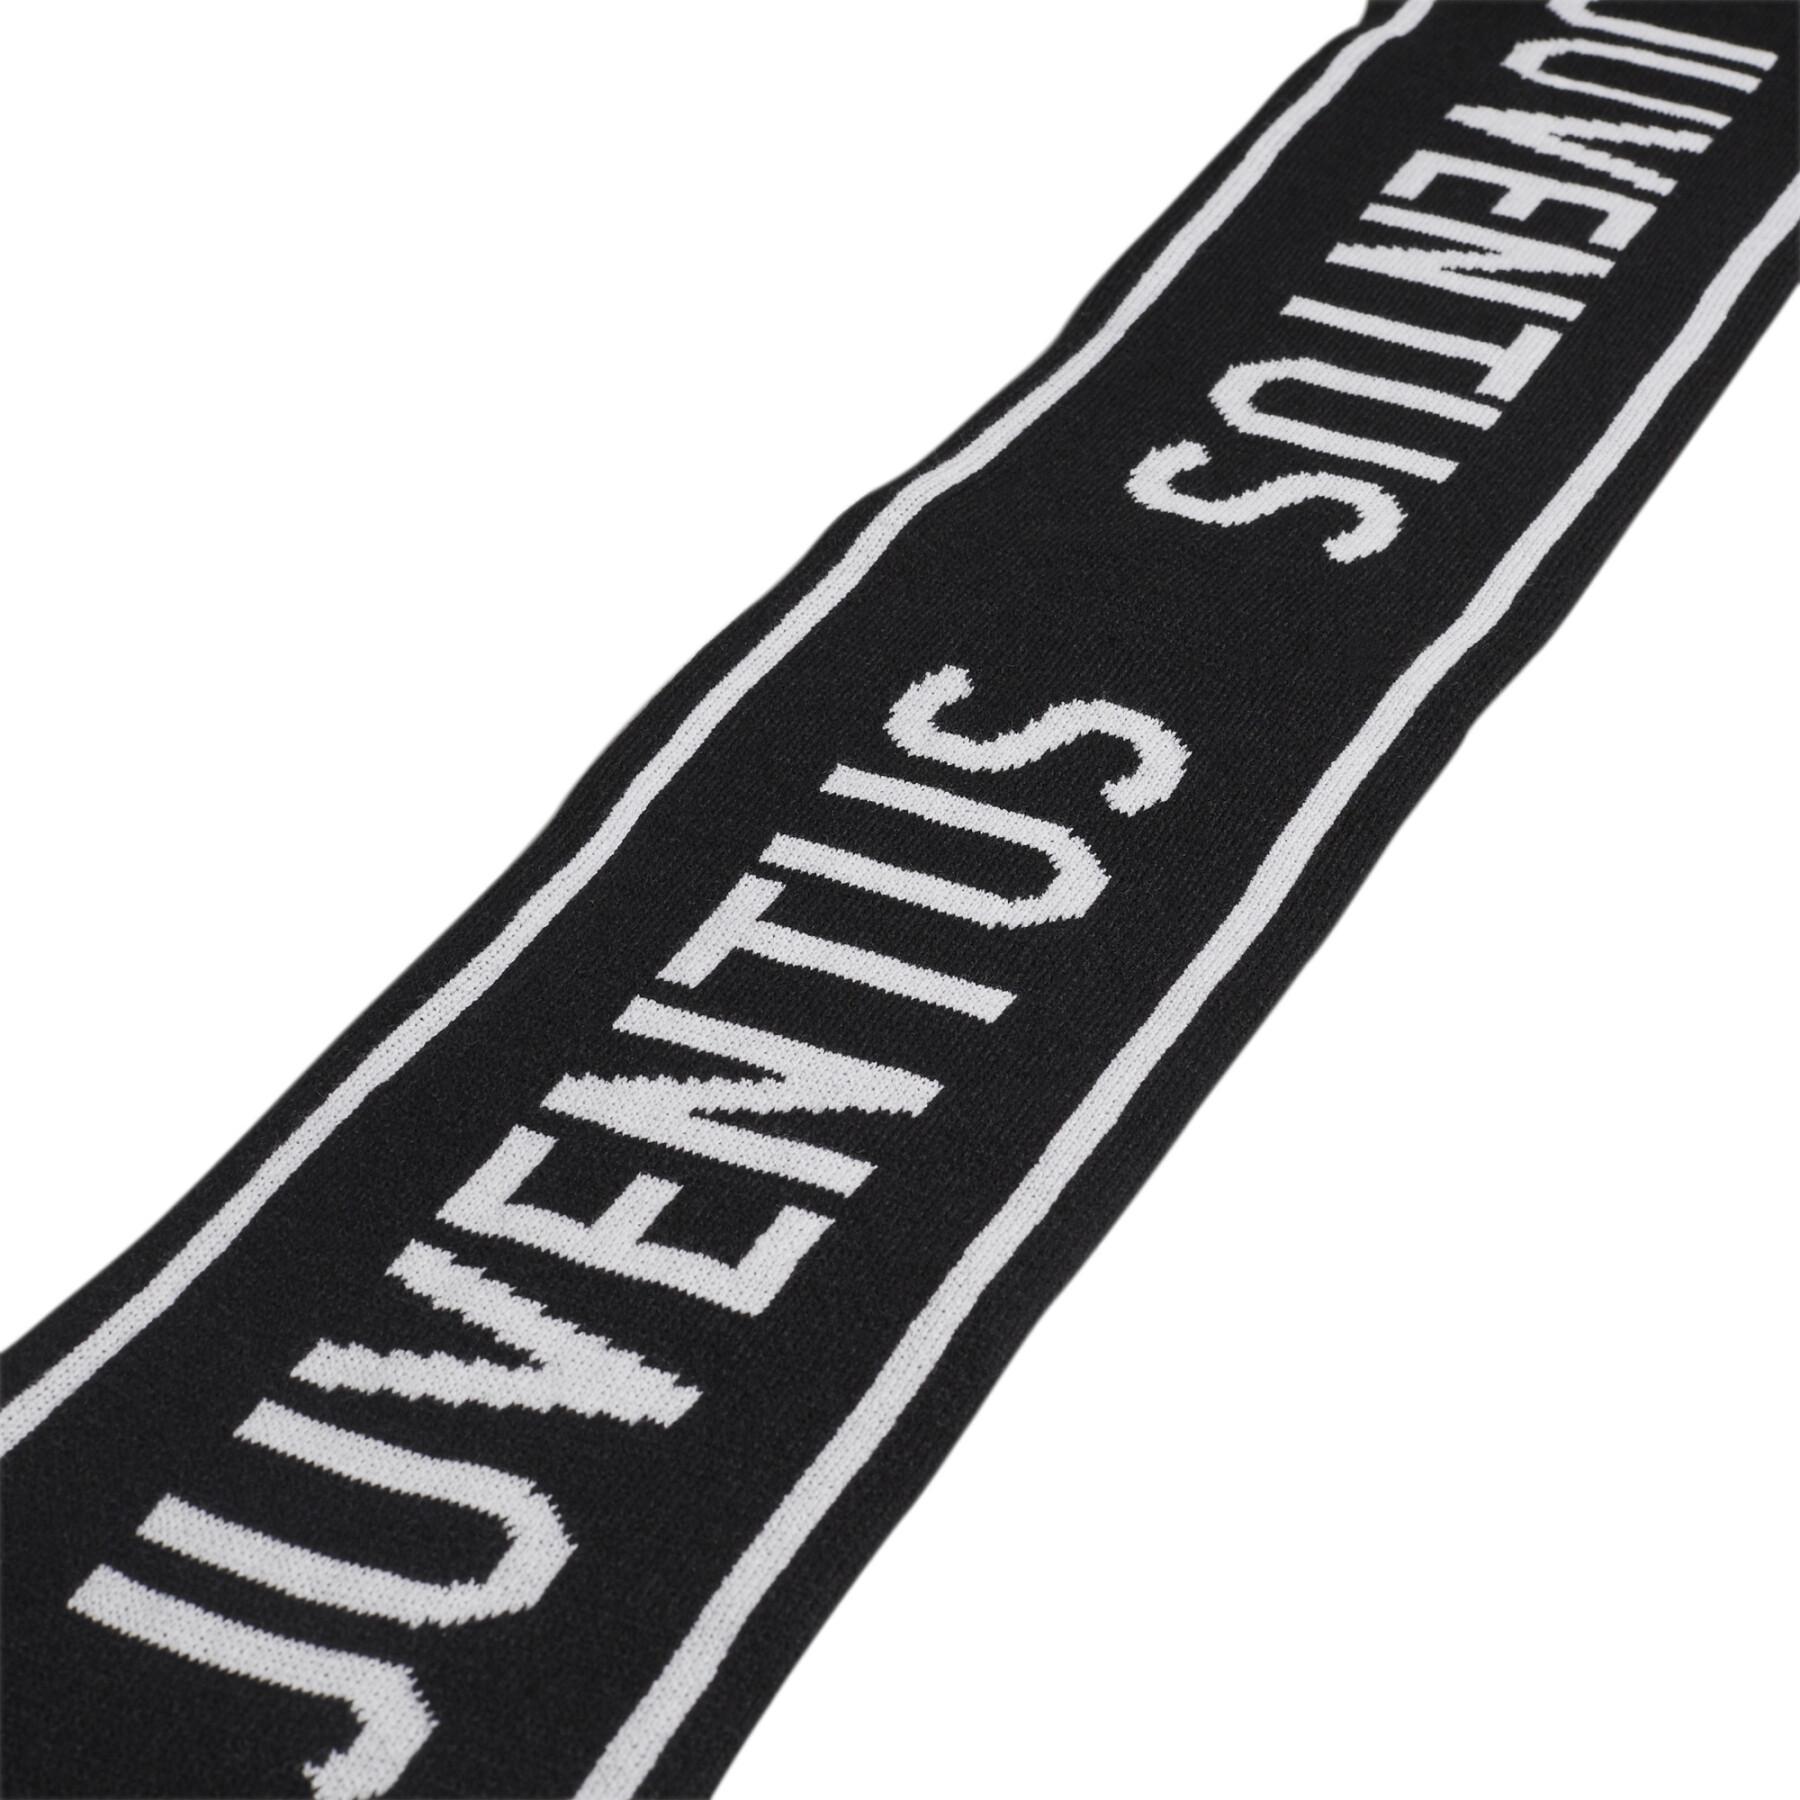 lenço de pescoço Juventus Turin 2021/22